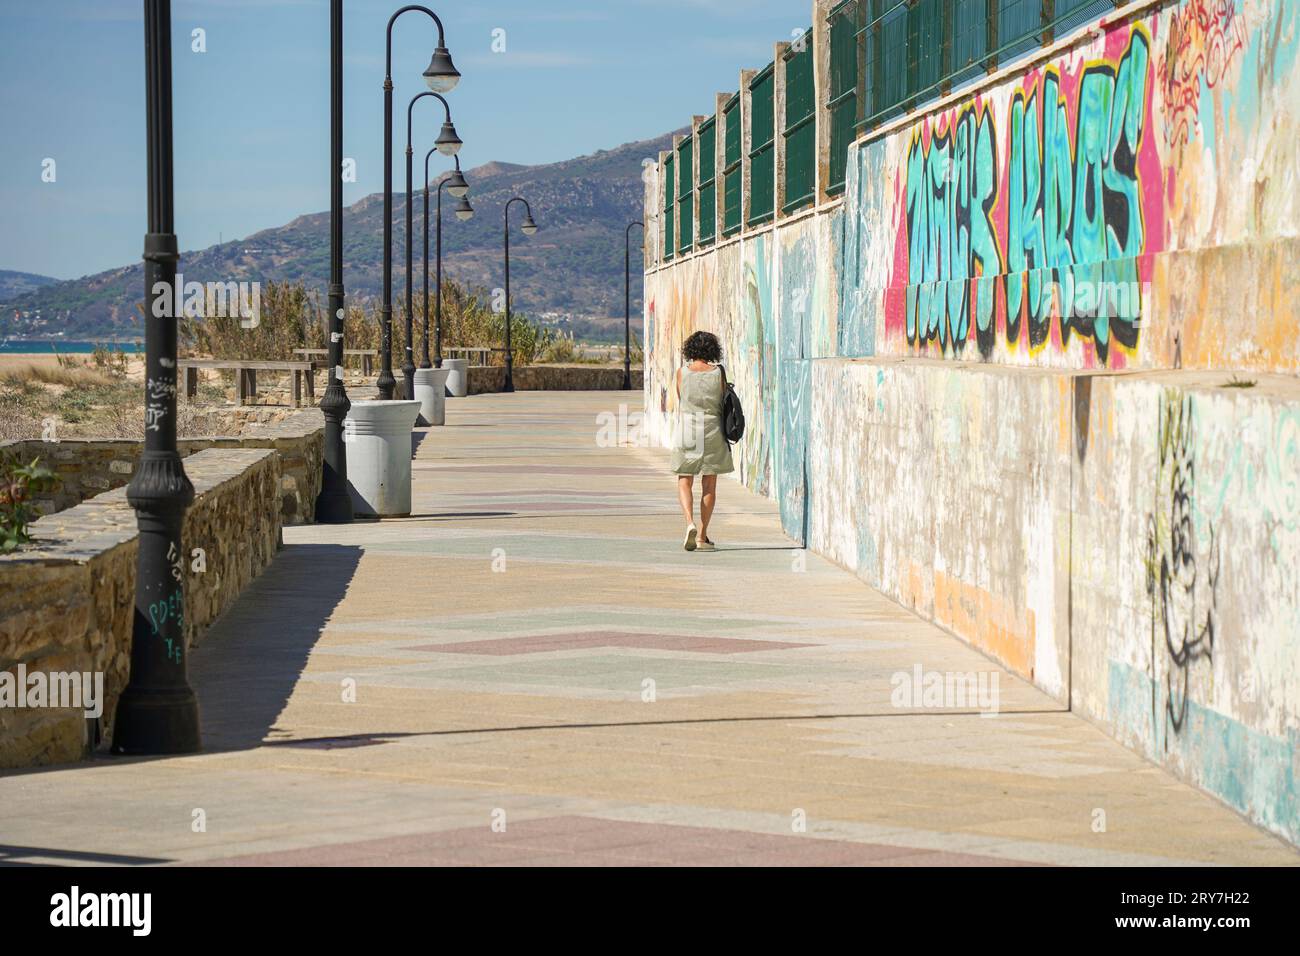 Femme marche seule, passerelle piétonne, promenade avec lampadaires et graffiti sur le mur à côté de la plage, Tarifa, Espagne. Banque D'Images